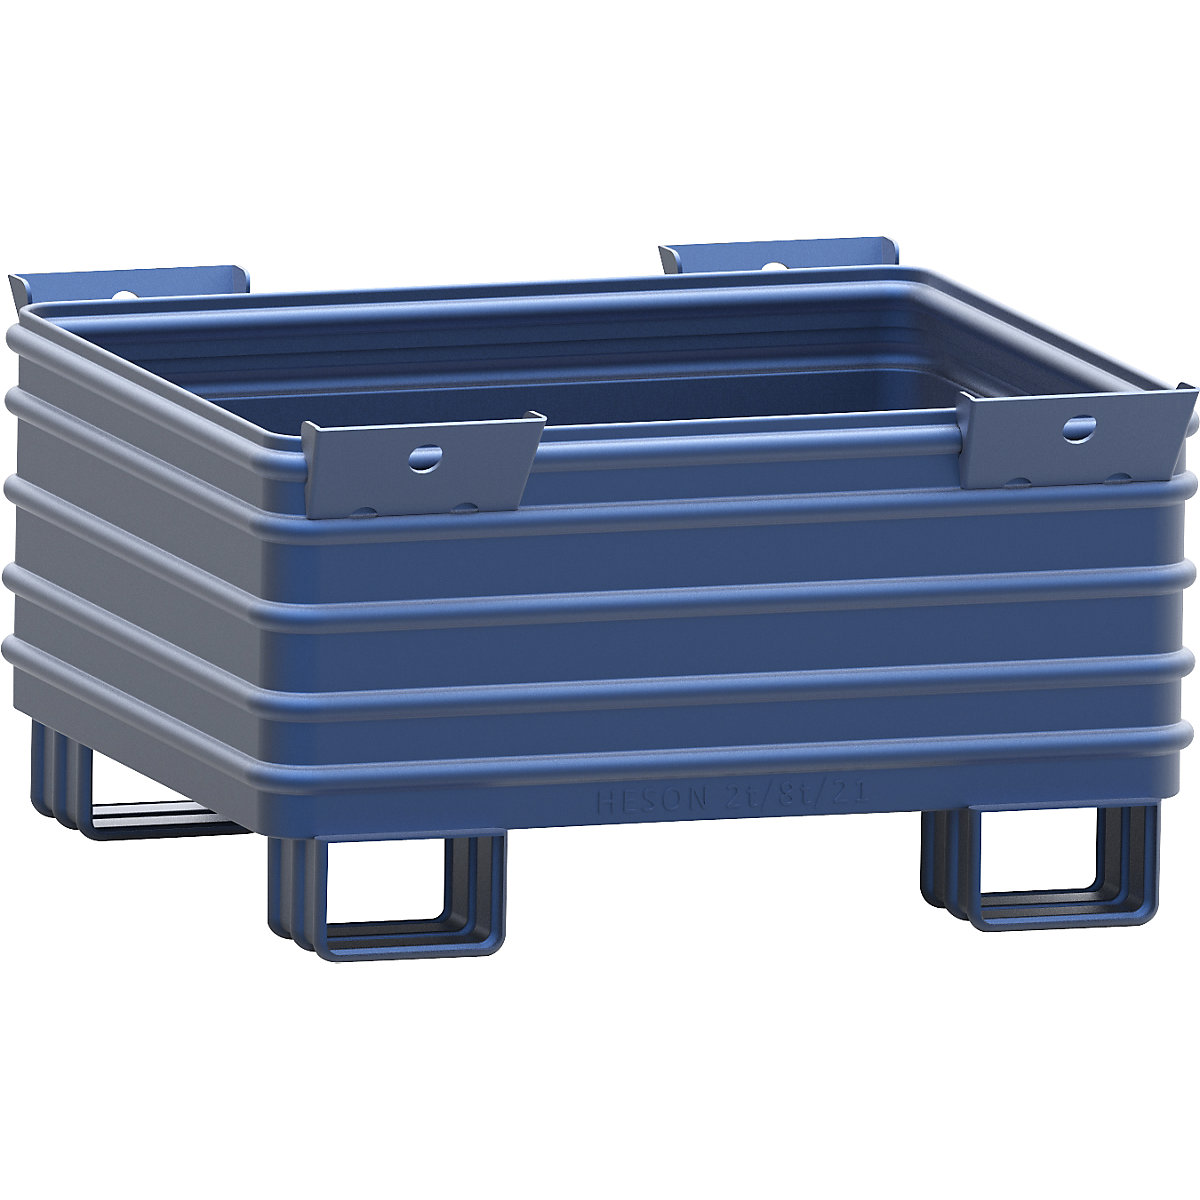 Schwerlast-Stapelbehälter Heson, BxL 1000 x 1200 mm, mit U-förmigen Füßen, blau lackiert, ab 10 Stk-3